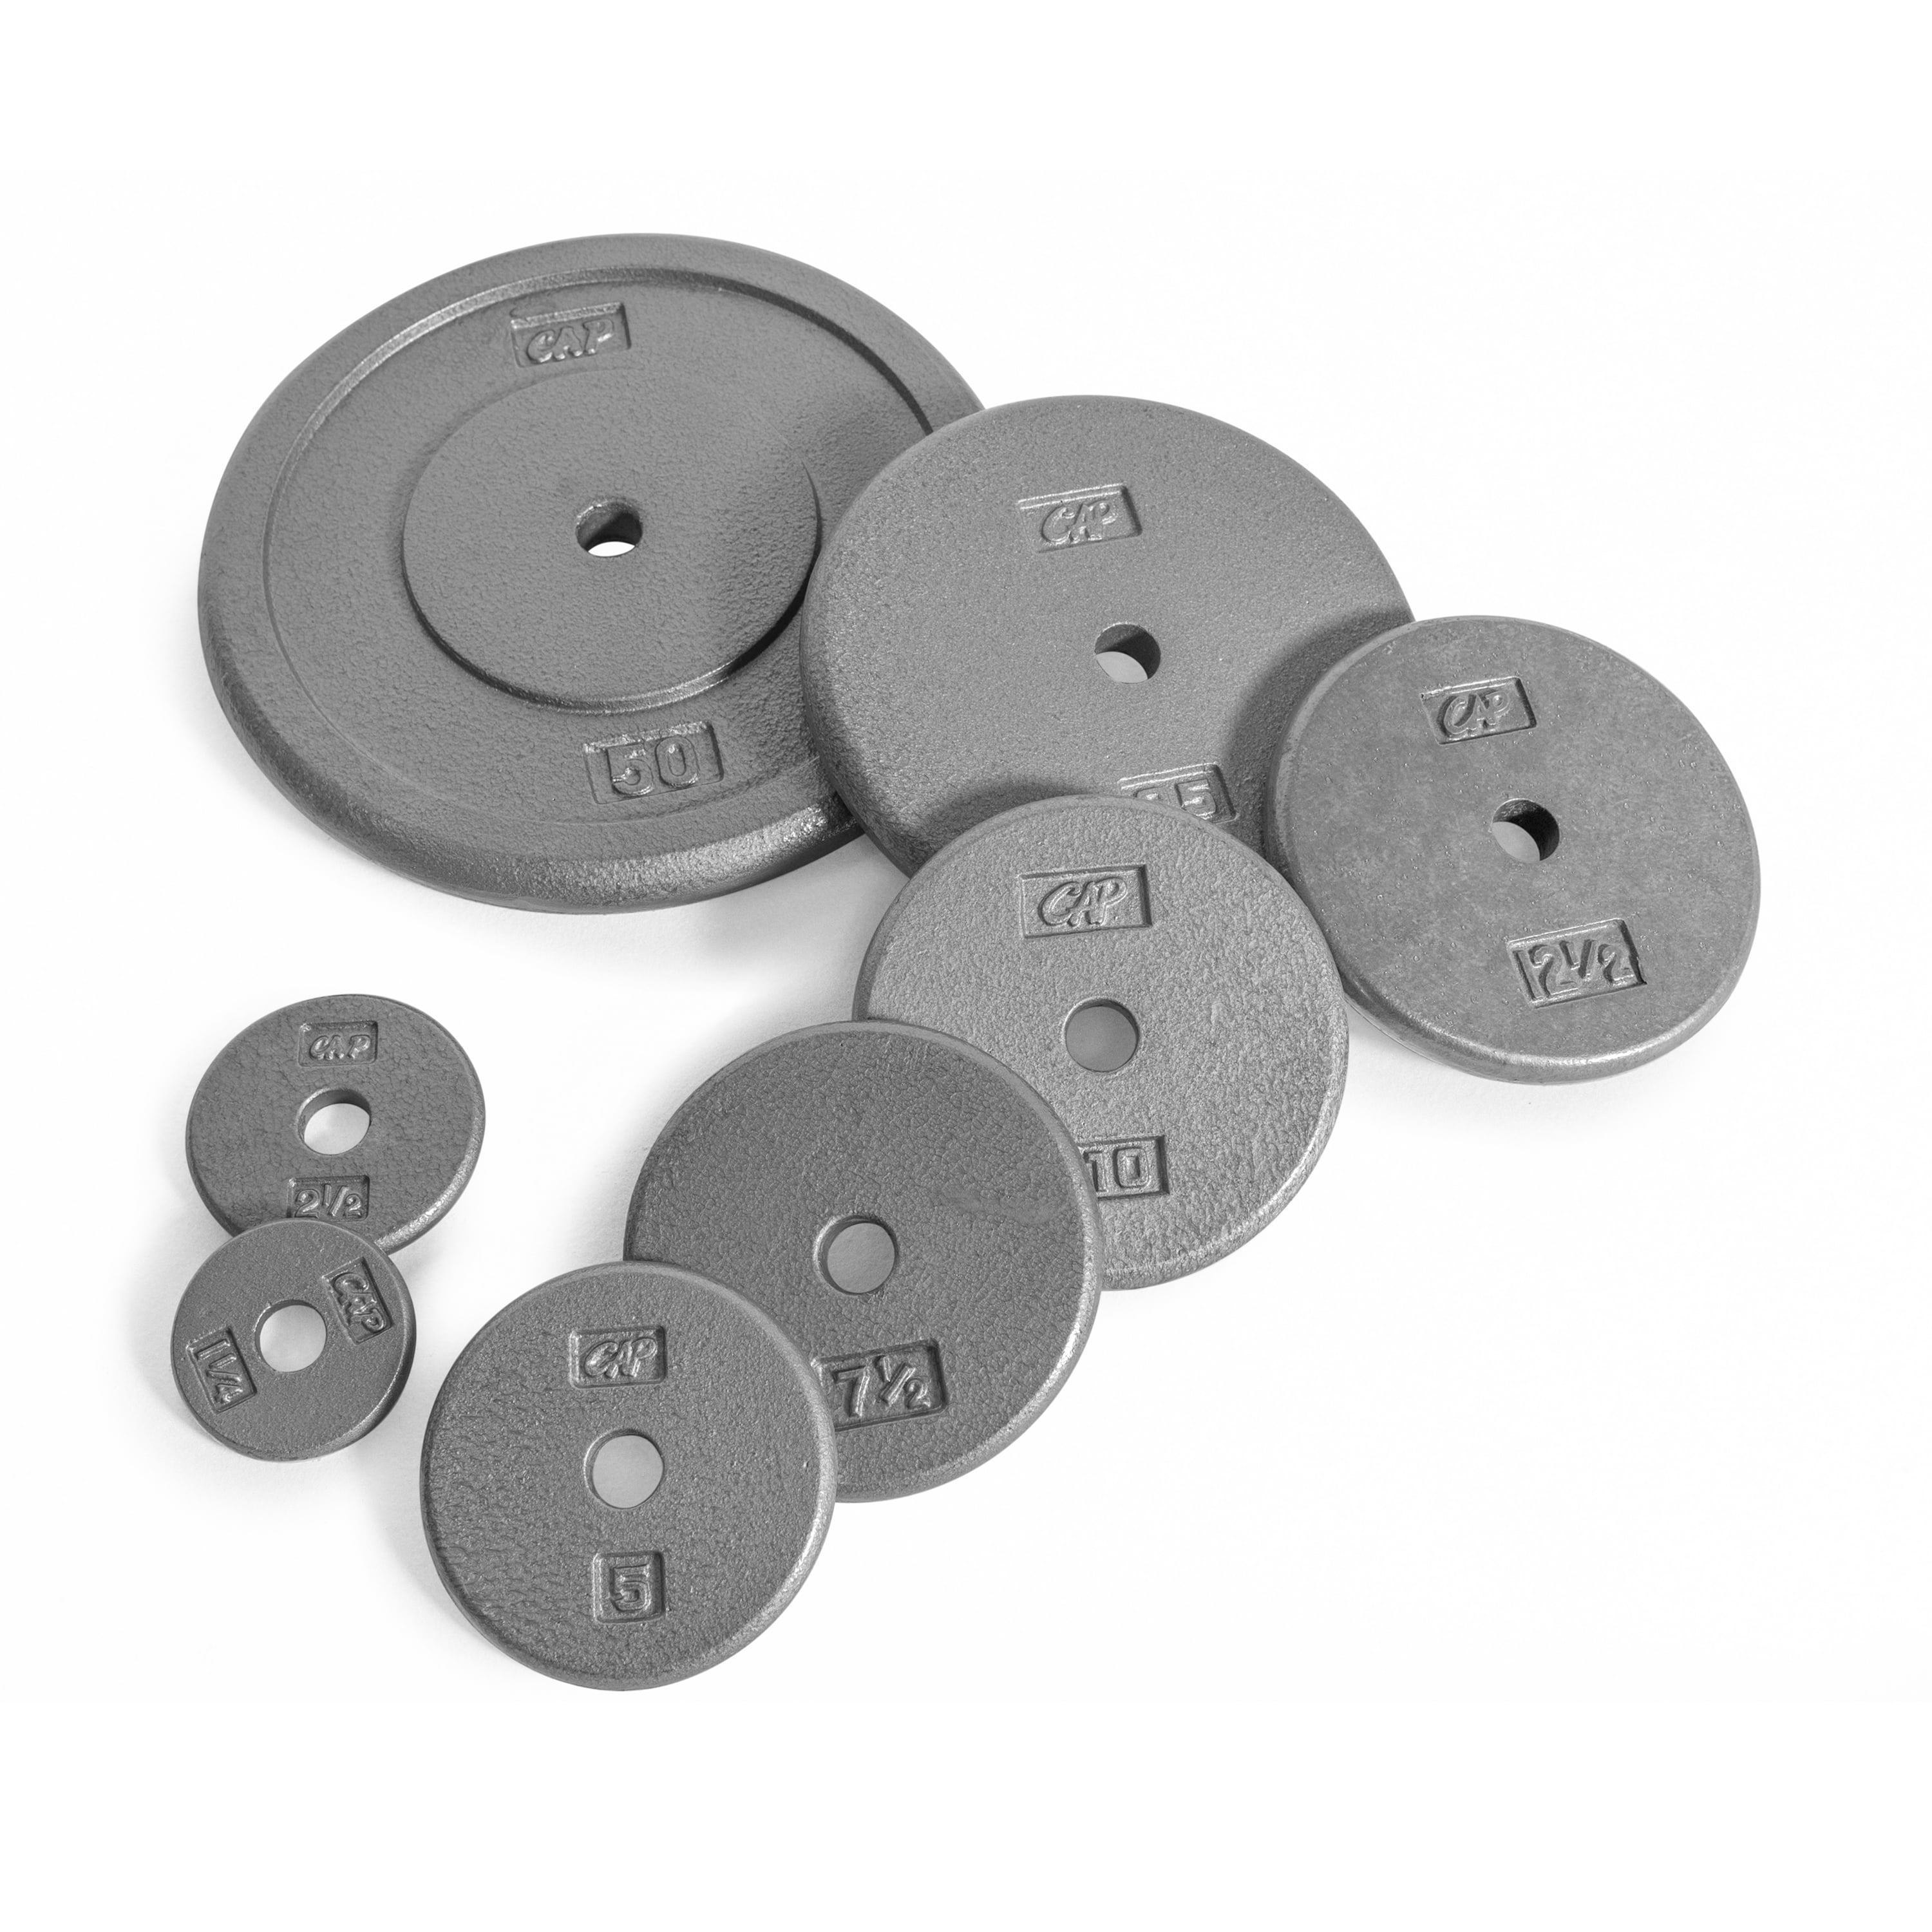 Details about   Dumbbell Plates CAP 1-1/4 lb KEYS 2-1/2 lb 1" Hole 7.5 lbs 2-pc Each 4-pc Lot 